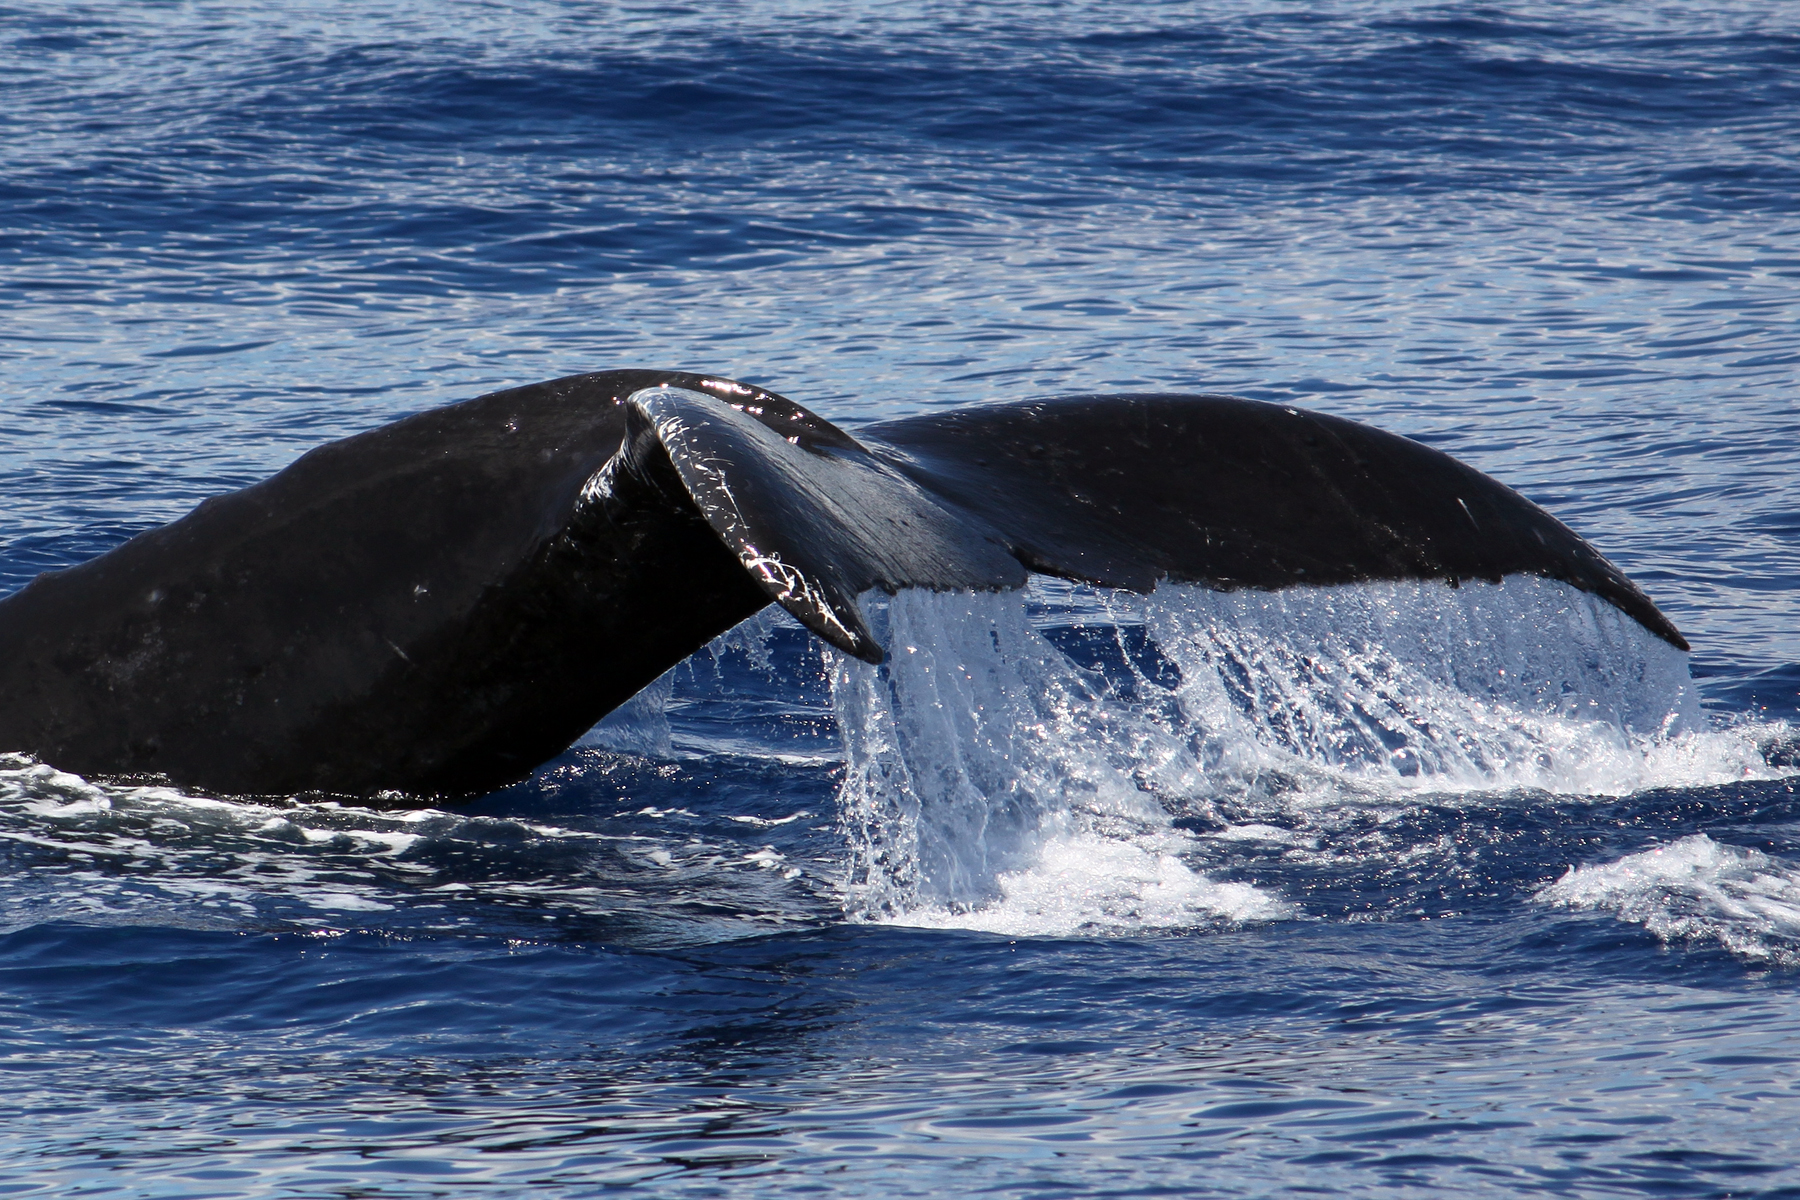 Maui Whale